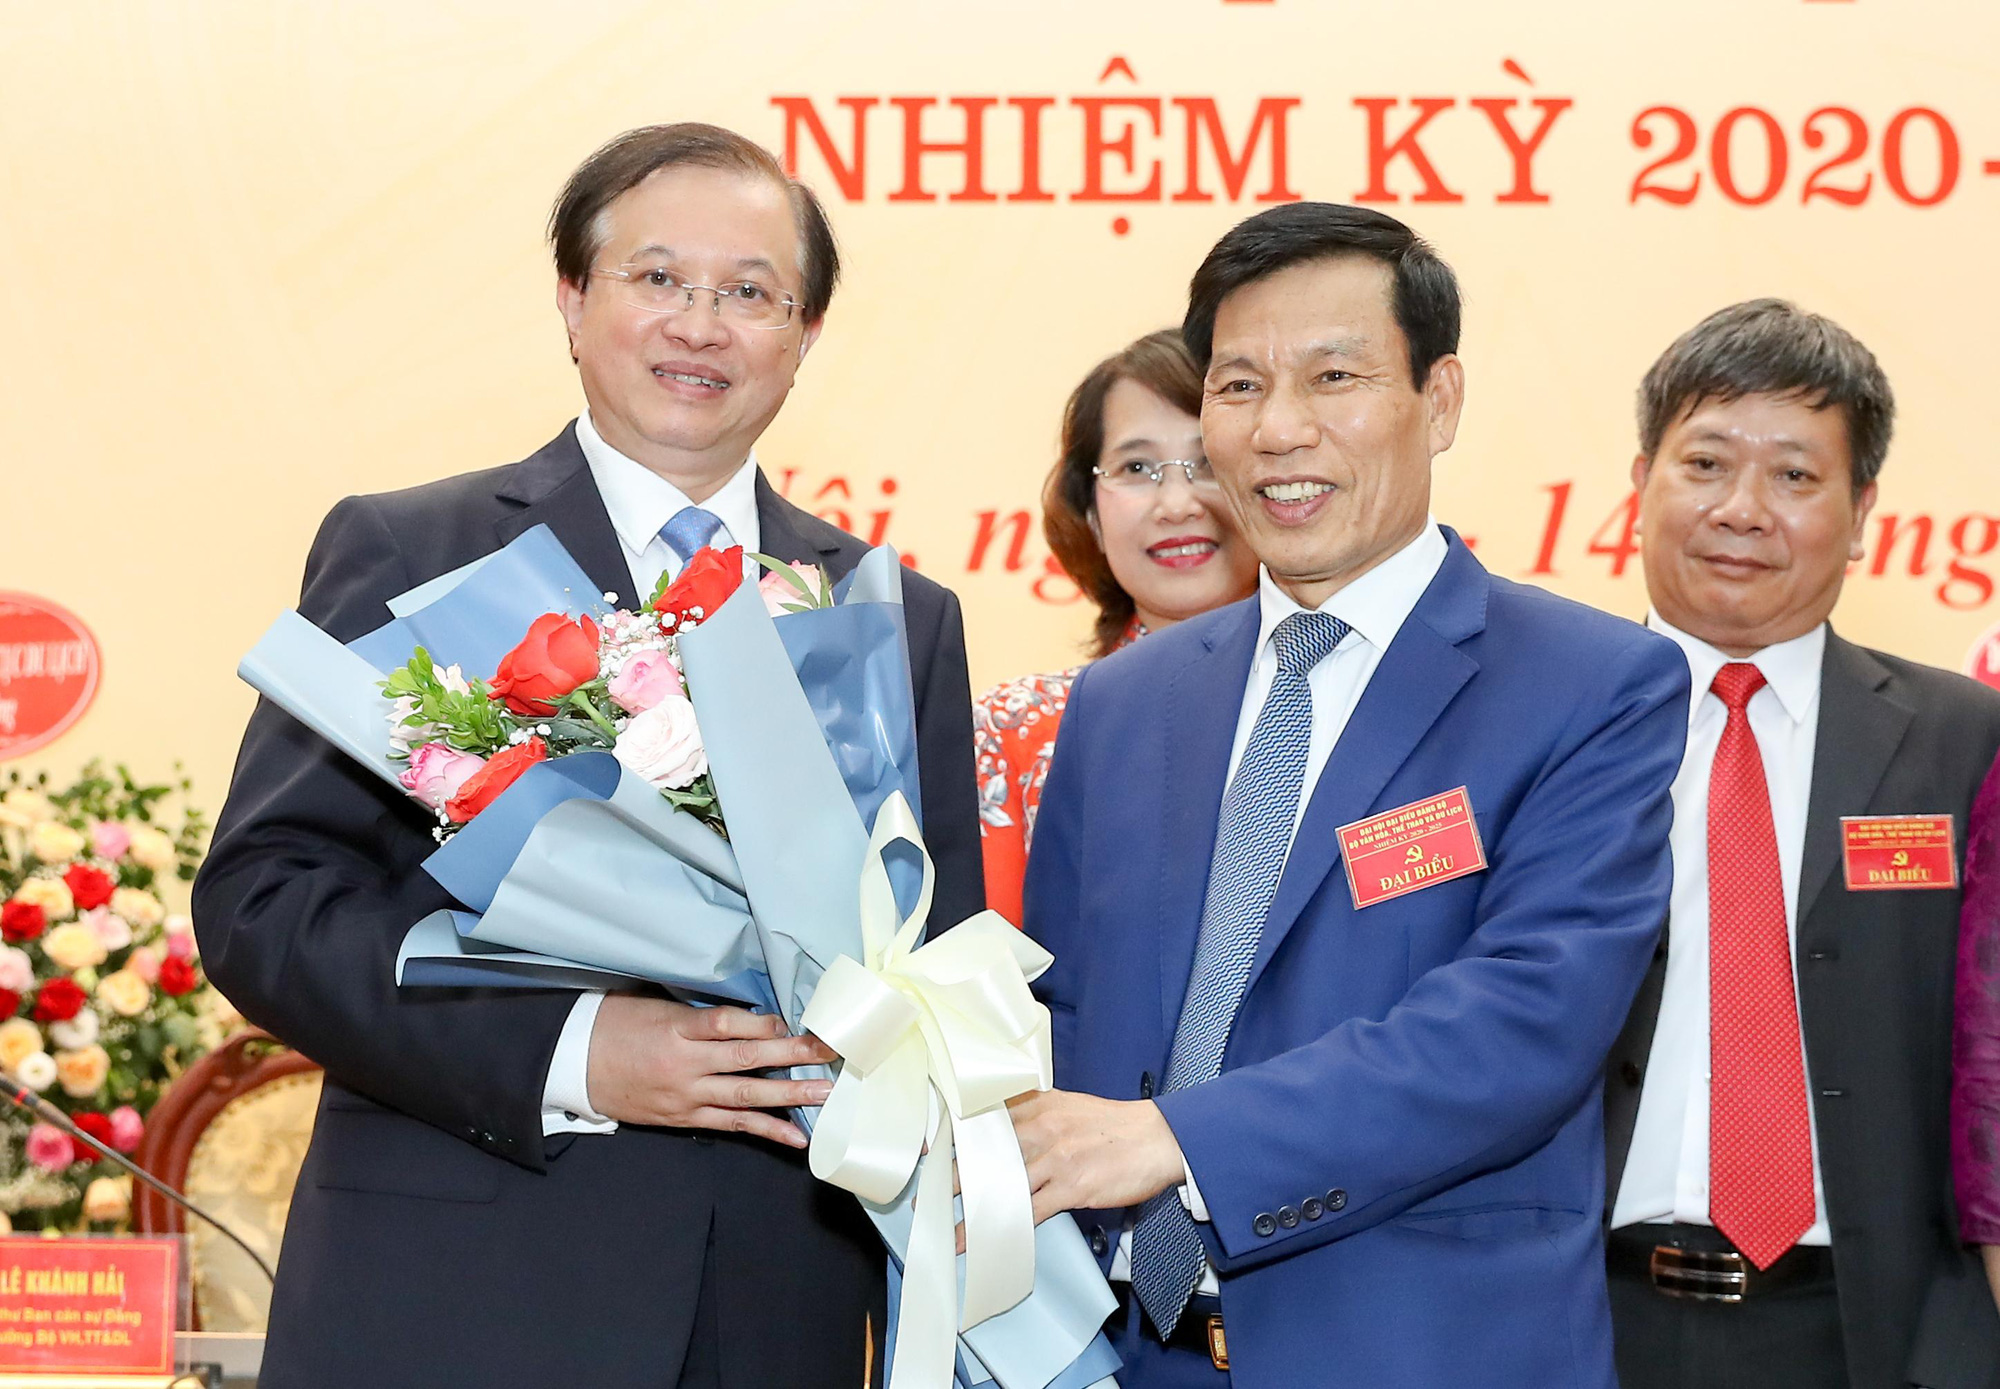 Thứ trưởng Tạ Quang Đông được bầu giữ chức Bí thư Đảng ủy Bộ VHTTDL nhiệm kỳ 2020 - 2025 - Ảnh 4.